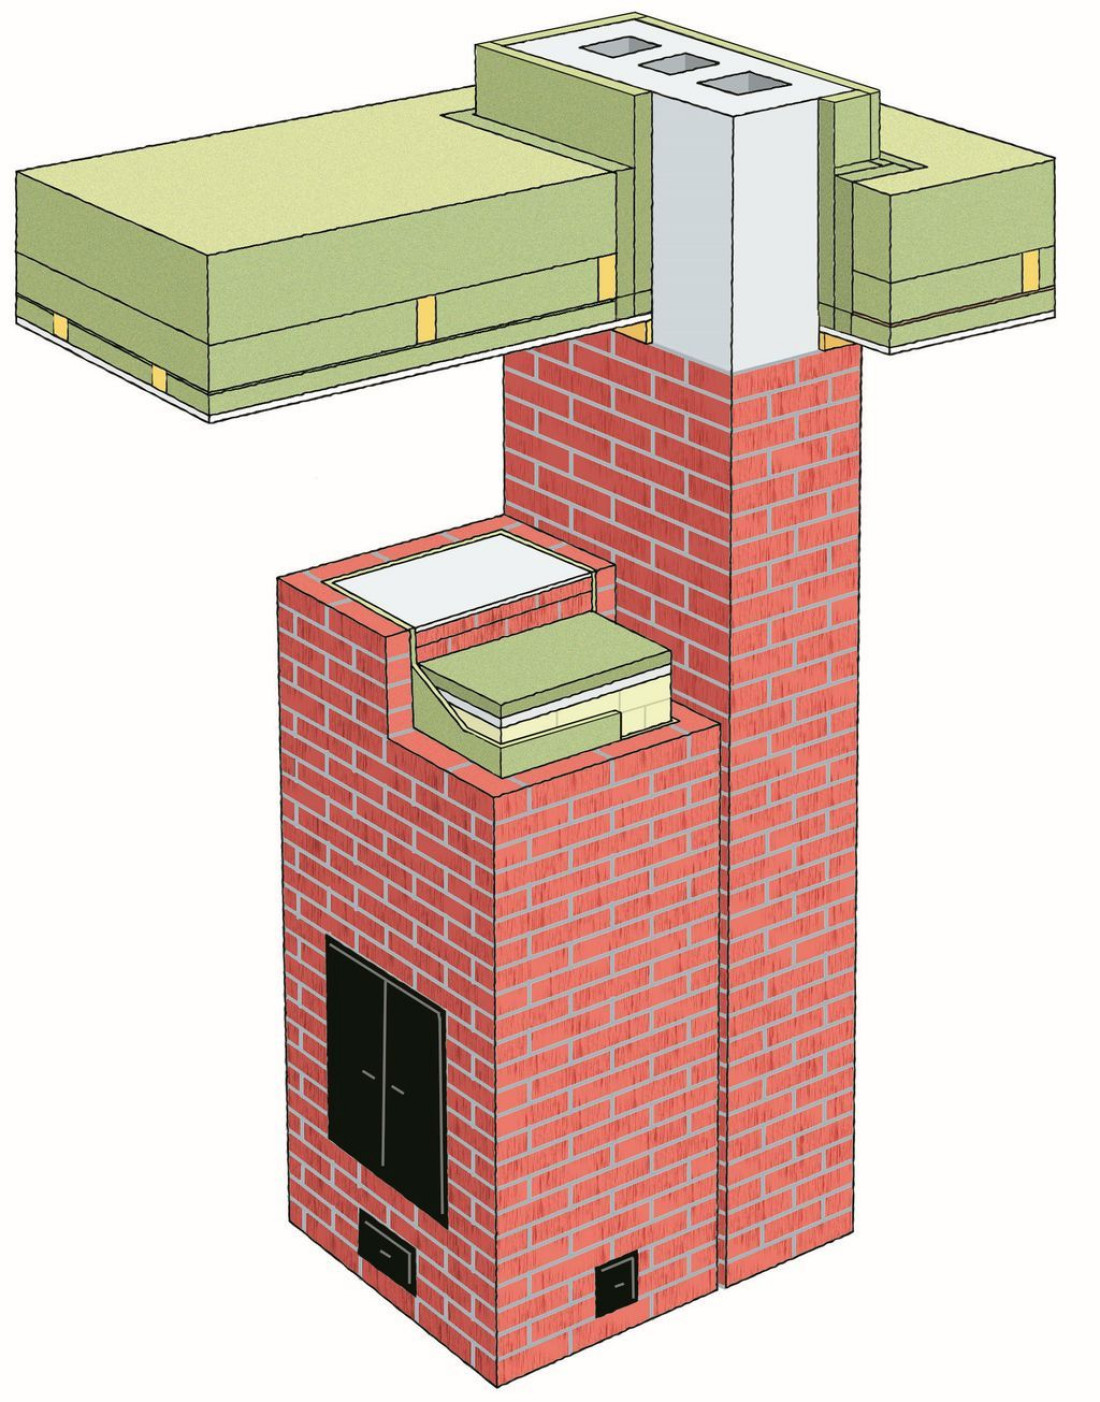 Izolacja przeciwpożarowa kominów. Jak, czym i dlaczego?